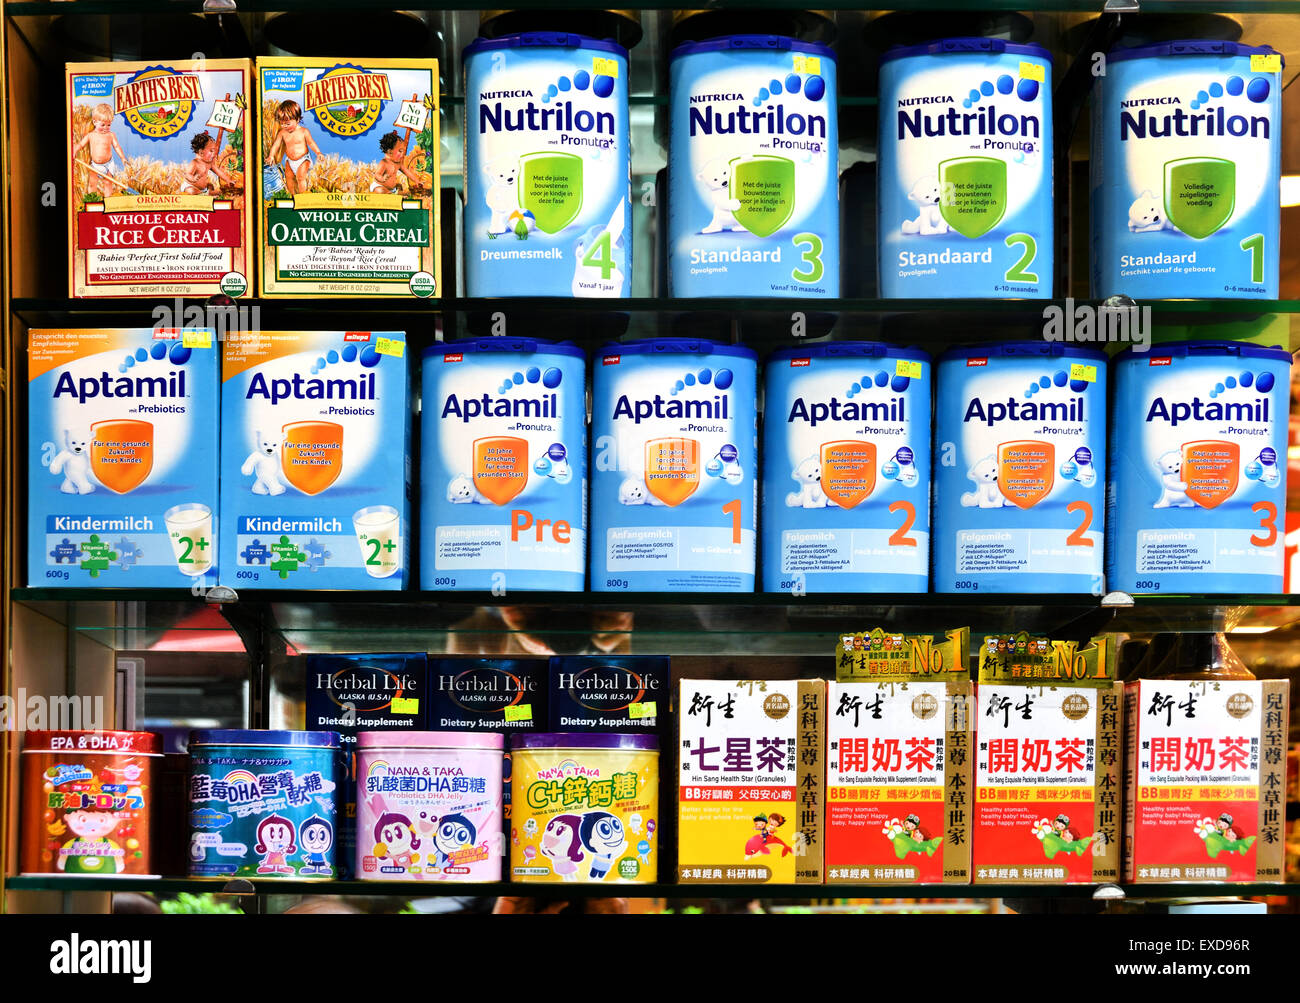 Nutrilon (Nutricia niederländische Milch Niederlande) spezialisiert auf Säuglingsnahrung. Hong Kong-Plakat-Logo Metro Station chinesische China Nutrilon (Nutricia niederländische Milch Niederlande) spezialisiert auf Säuglingsnahrung. Hong Kong Stockfoto